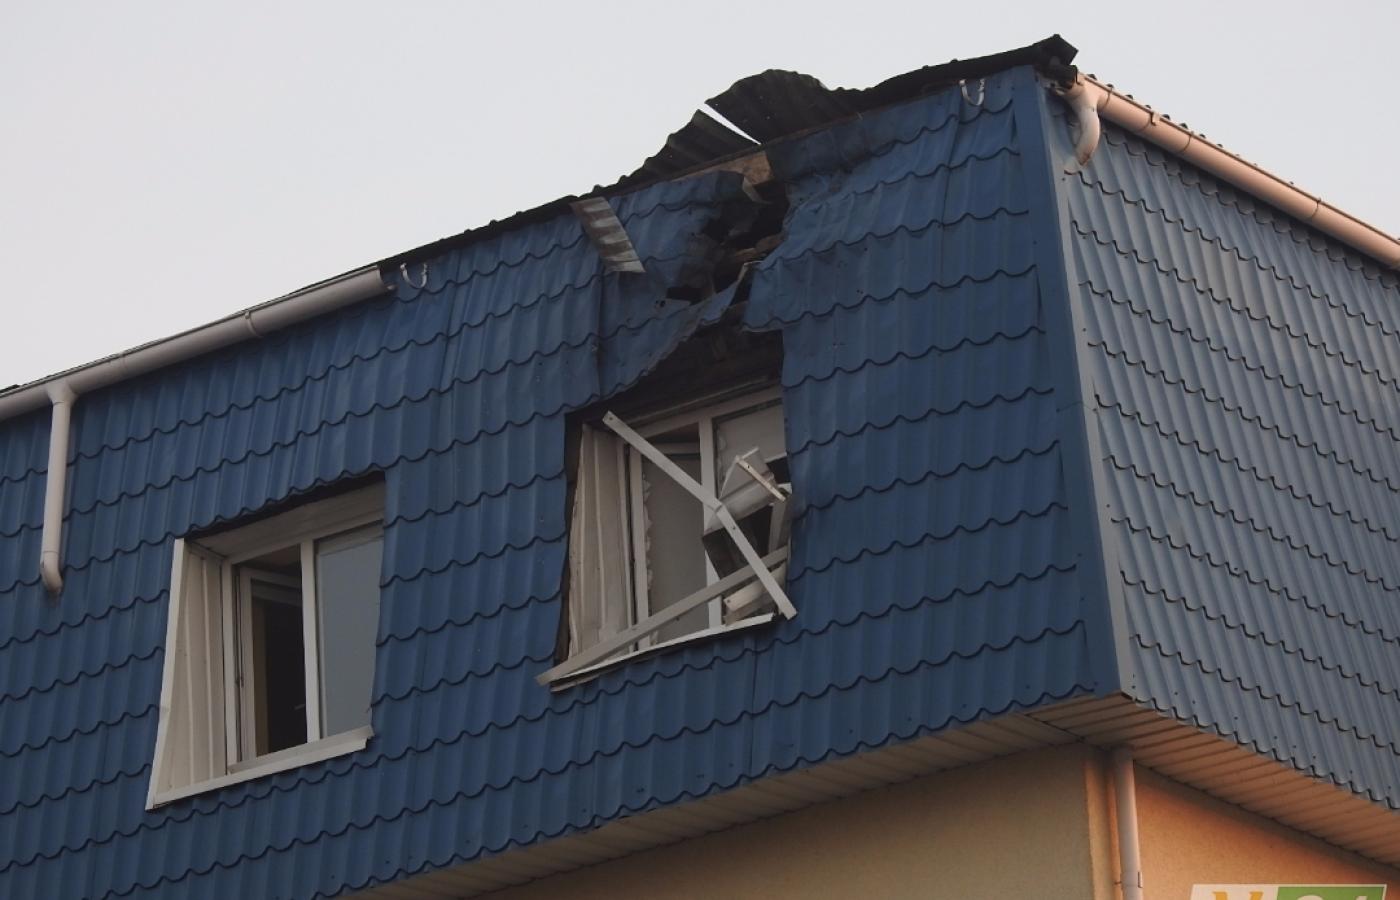 Polski konsulat w Łucku po ataku. Zdjęcie pochodzi z portalu volyn24.com